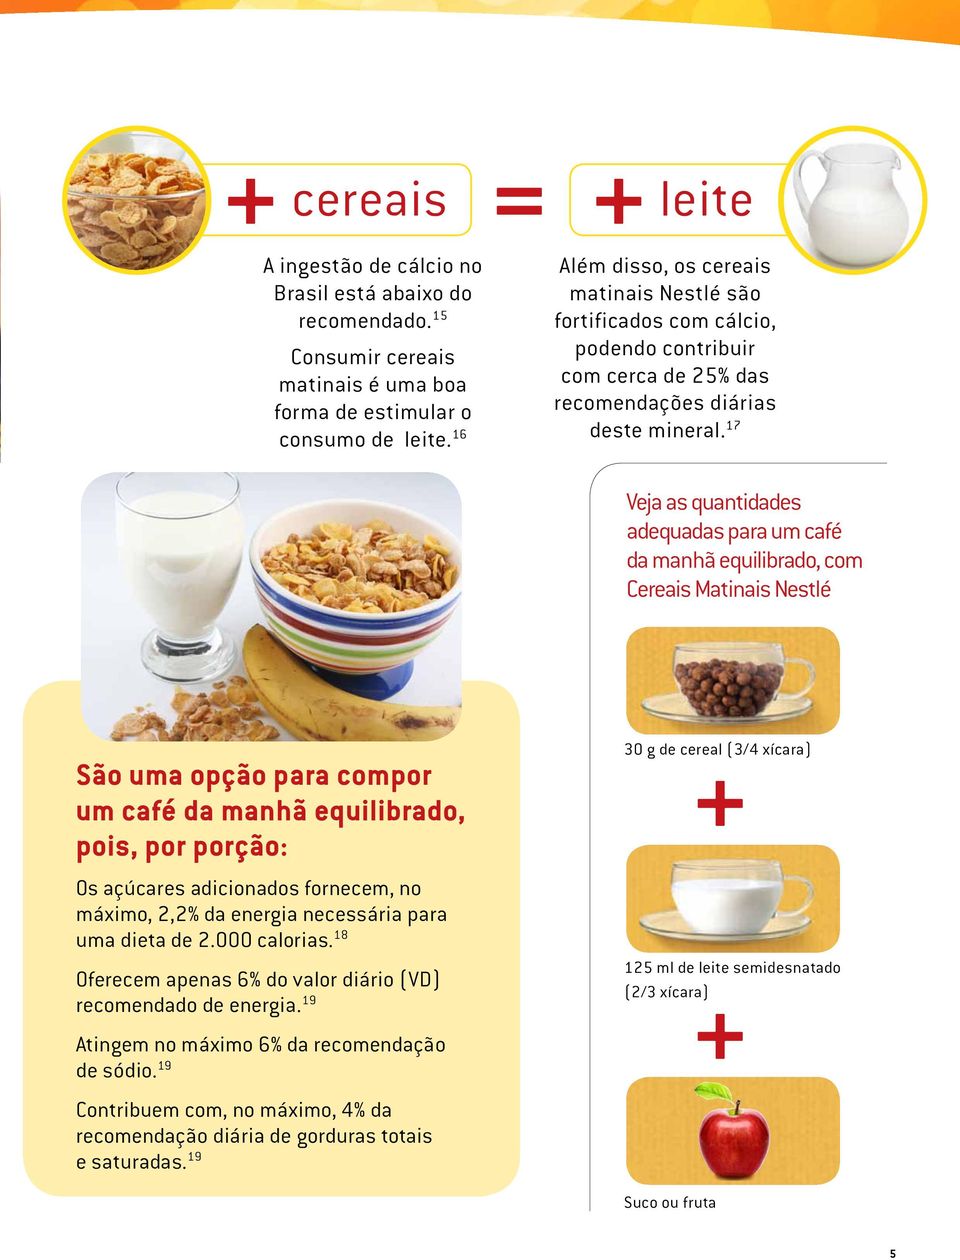 17 Veja as quantidades adequadas para um café da manhã equilibrado, com Cereais Matinais Nestlé São uma opção para compor um café da manhã equilibrado, pois, por porção: Os açúcares adicionados